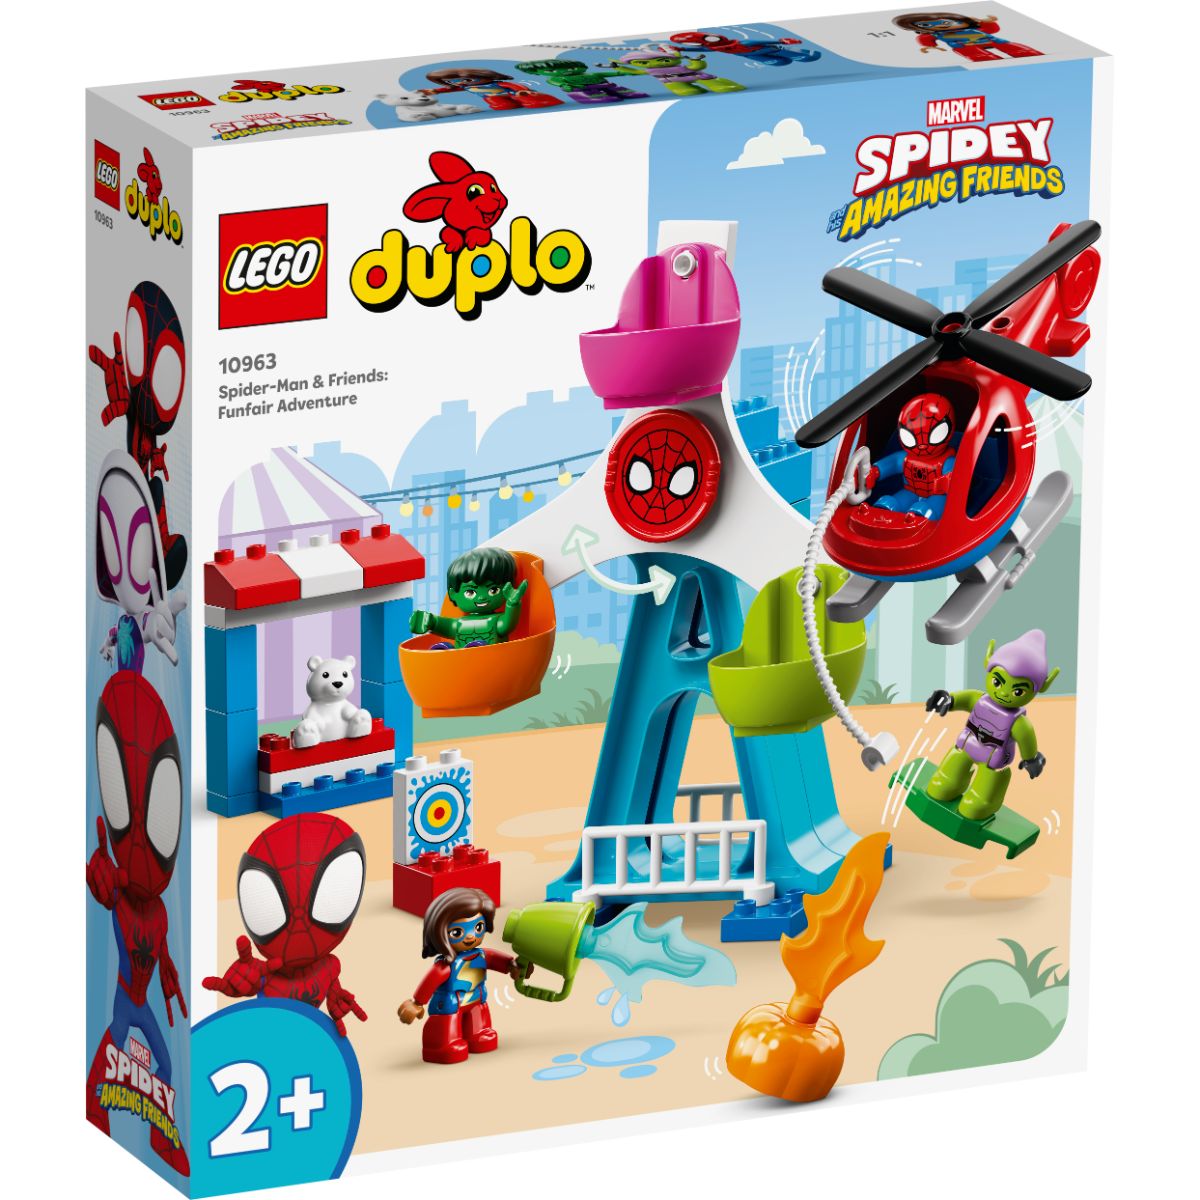 Poze LEGO® Duplo - Omul Paianjen si prietenii, Aventura in parcul de distractii (10963)